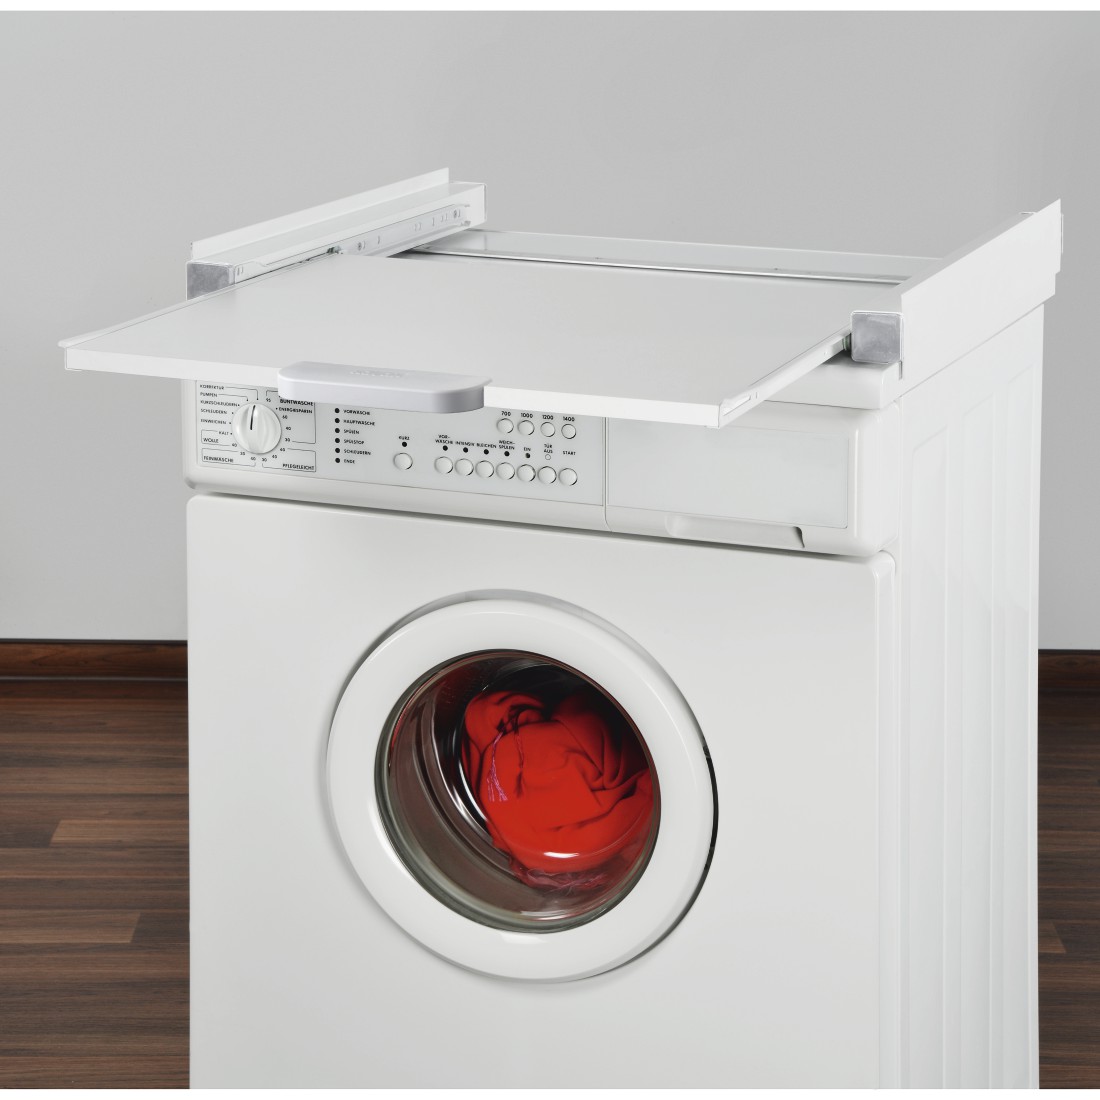 awx2 Druckfähige Anwendung 2 - Xavax, Zwischenbaurahmen für Waschmaschine und Trockner, mit Auszug als Ablage